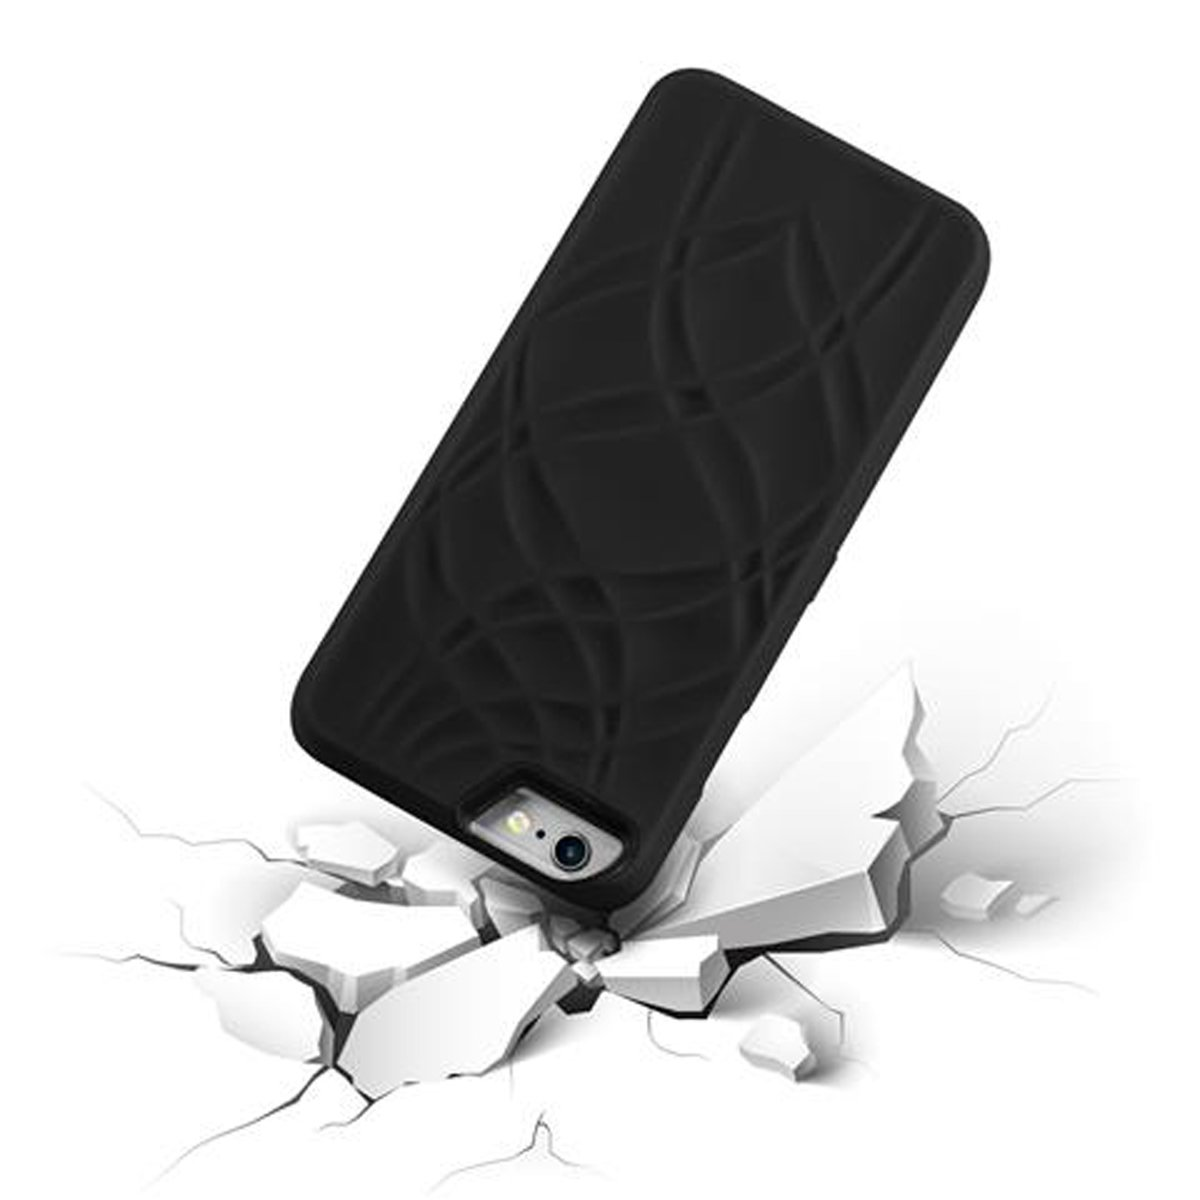 CADORABO Hülle Hard PLUS mit iPhone 6S PLUS, Backcover, 6 SCHWARZ / Apple, Schutzhülle und Kartenfächern, Spiegel Case